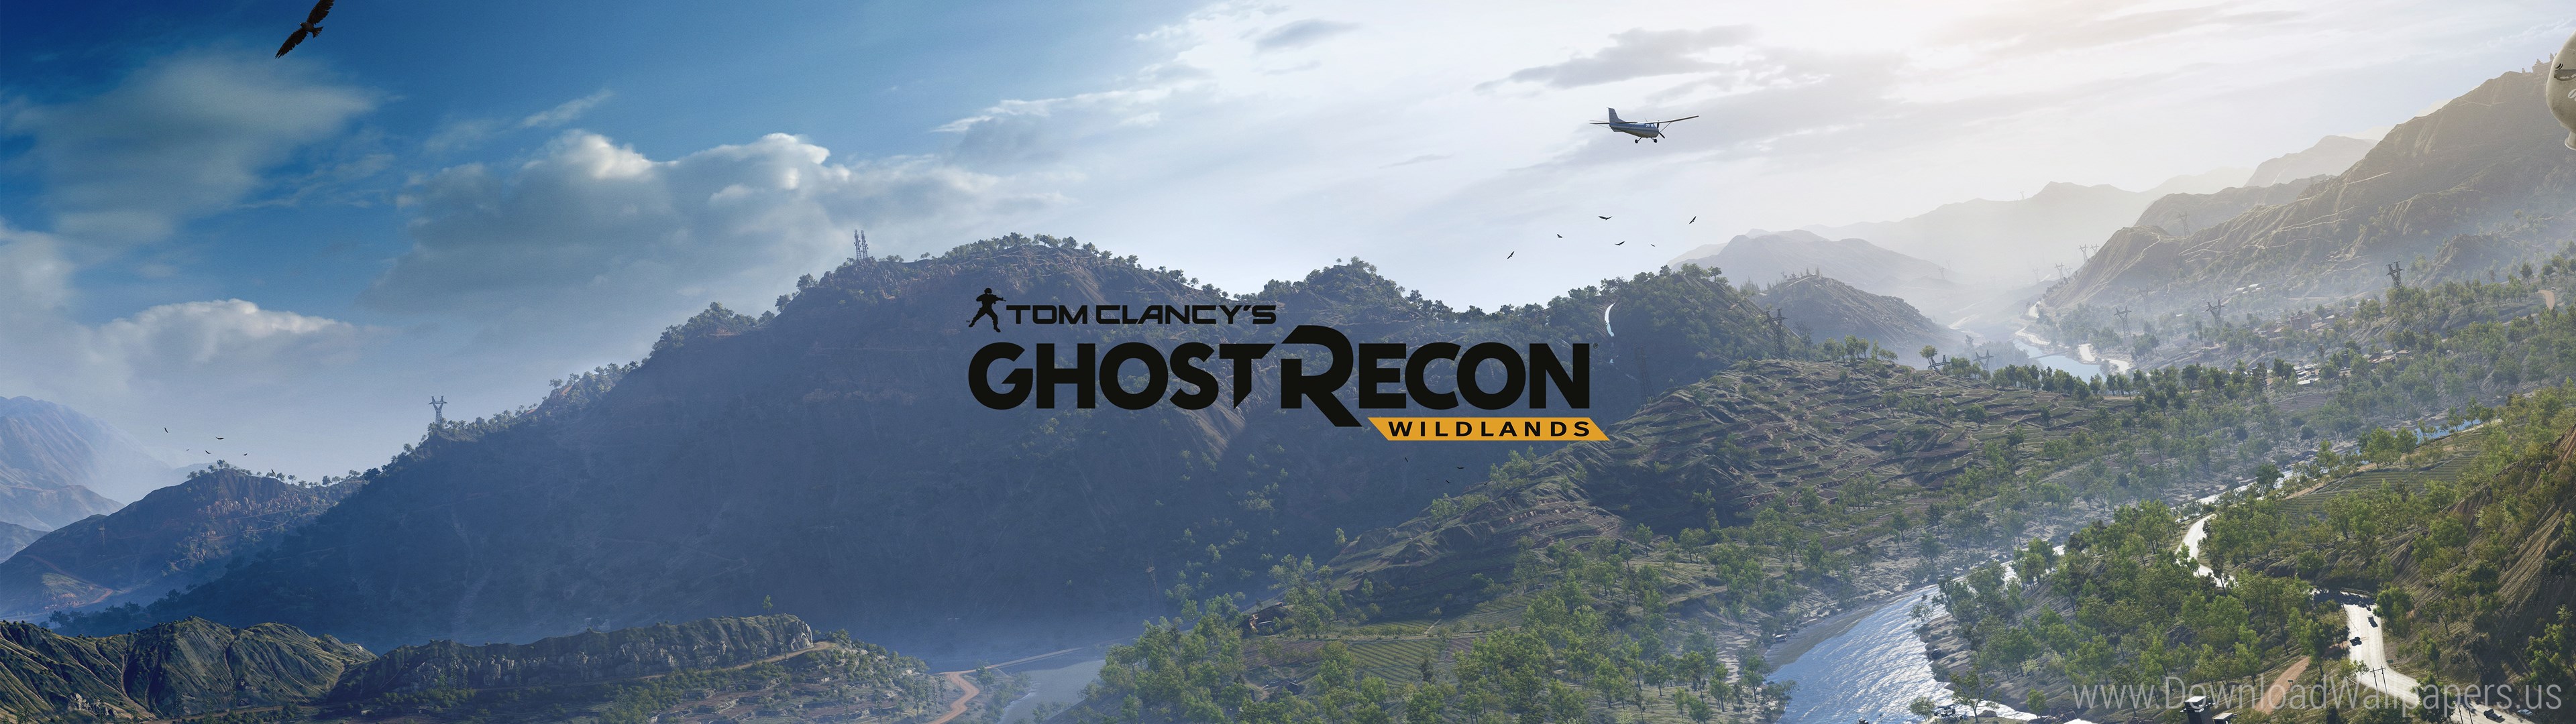 Ghost Recon Wildlands 4k , HD Wallpaper & Backgrounds